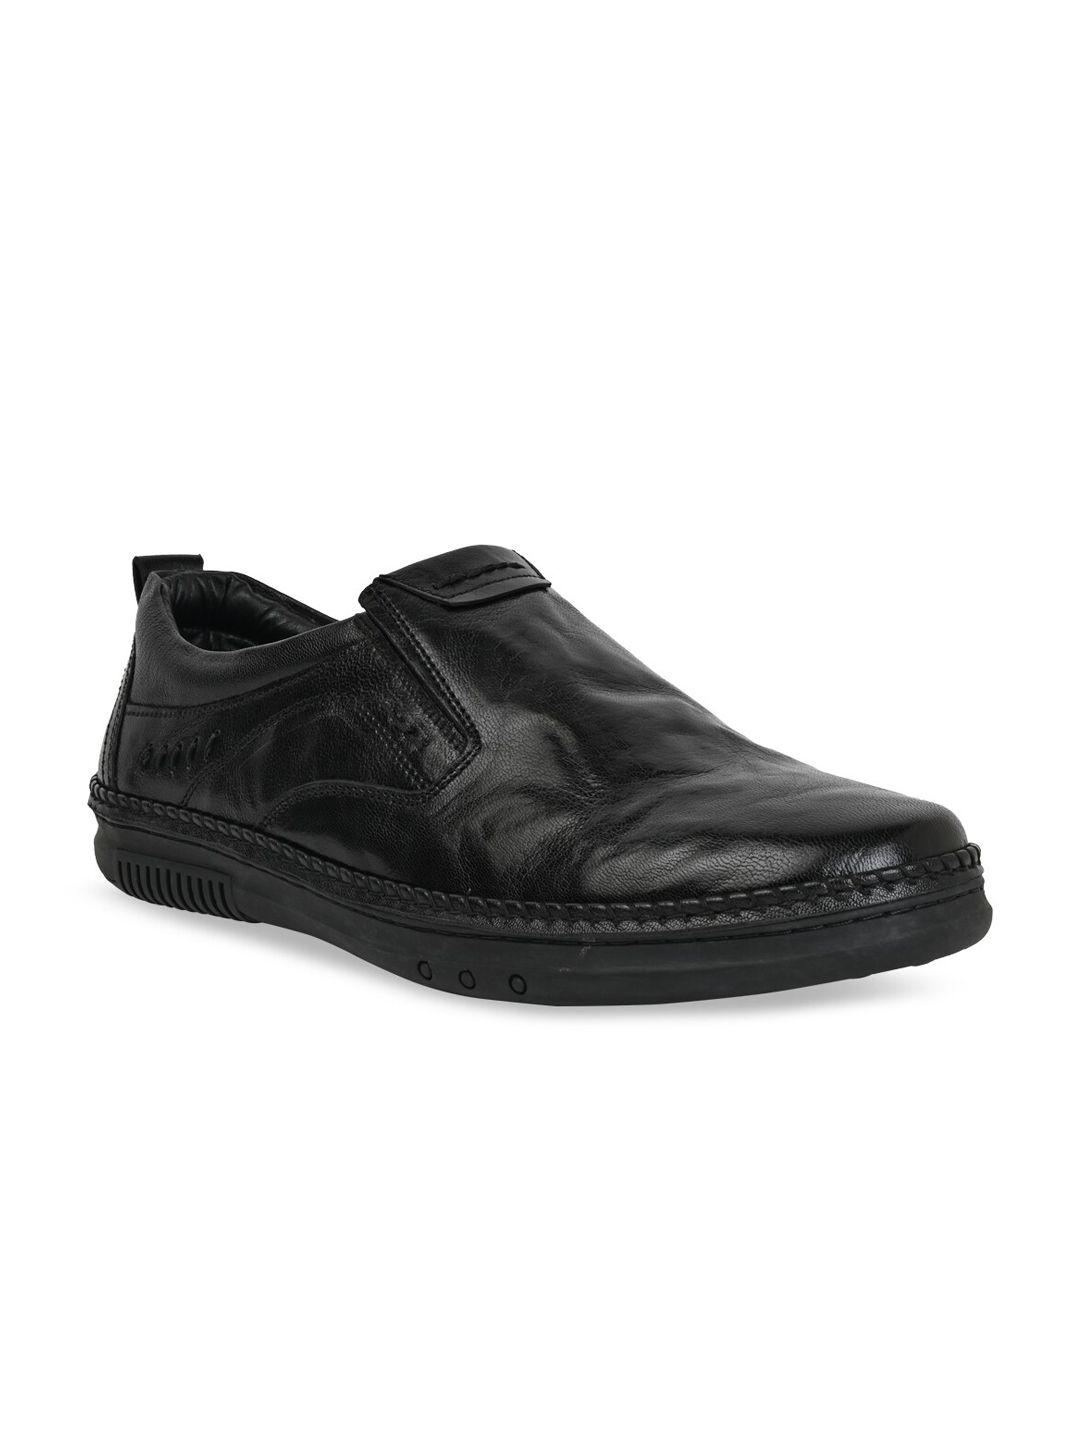 regal-men-printed-leather-slip-on-sneakers